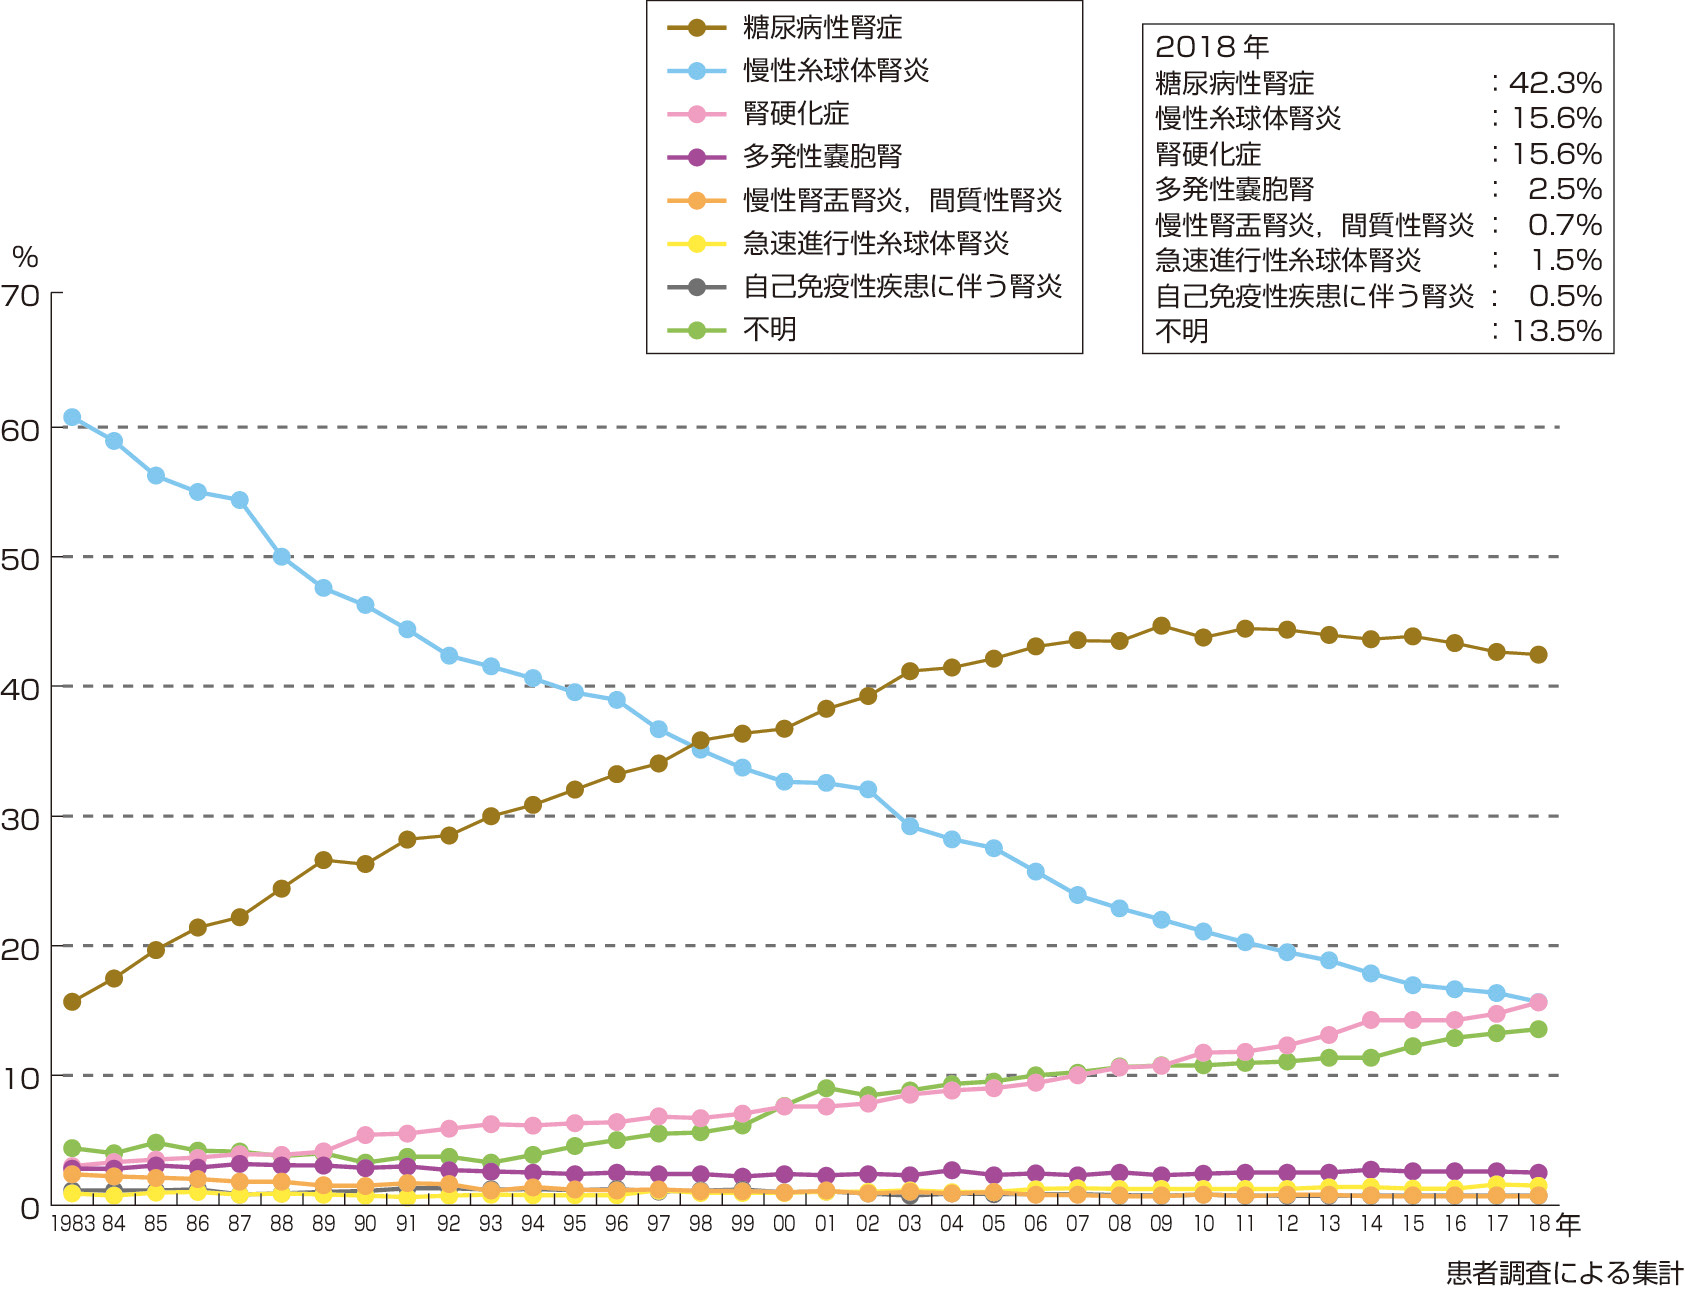 図2　透析導入患者原疾患割合 (一般社団法人日本透析医学会「わが国の慢性透析療法の現況 (2018年12月31日現在) 」)． 